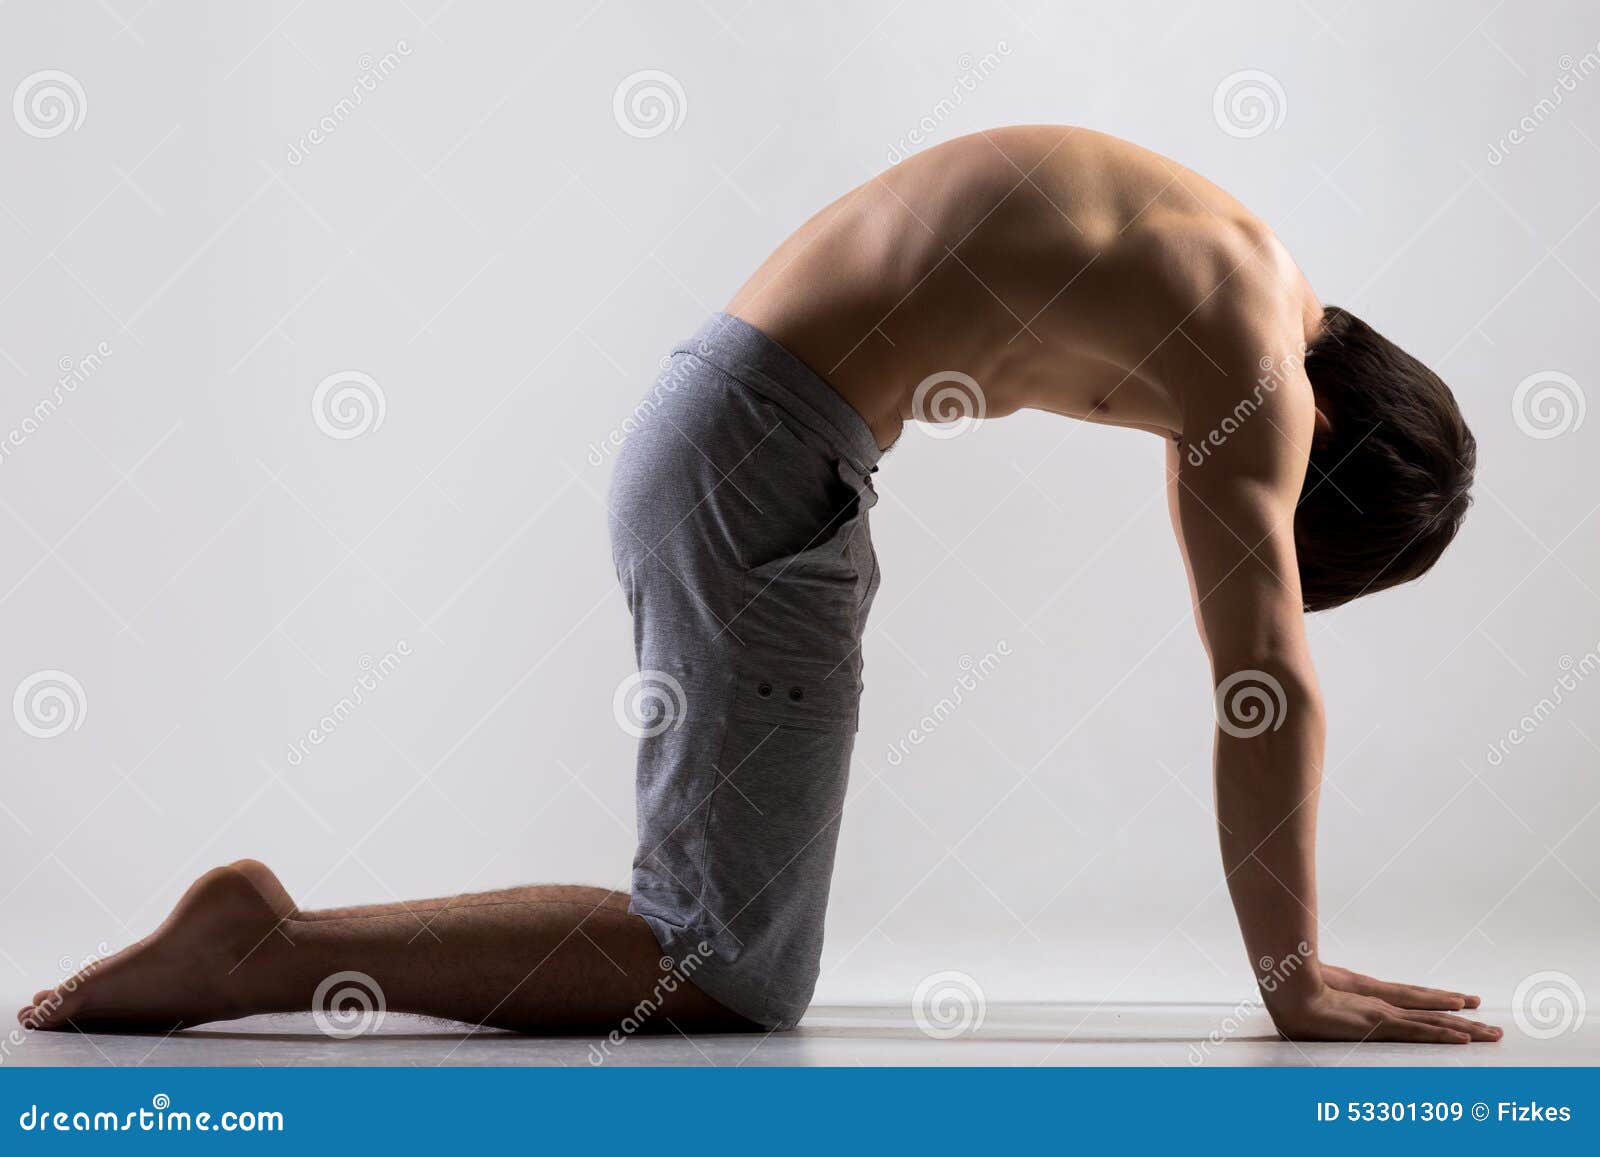 cat yoga pose